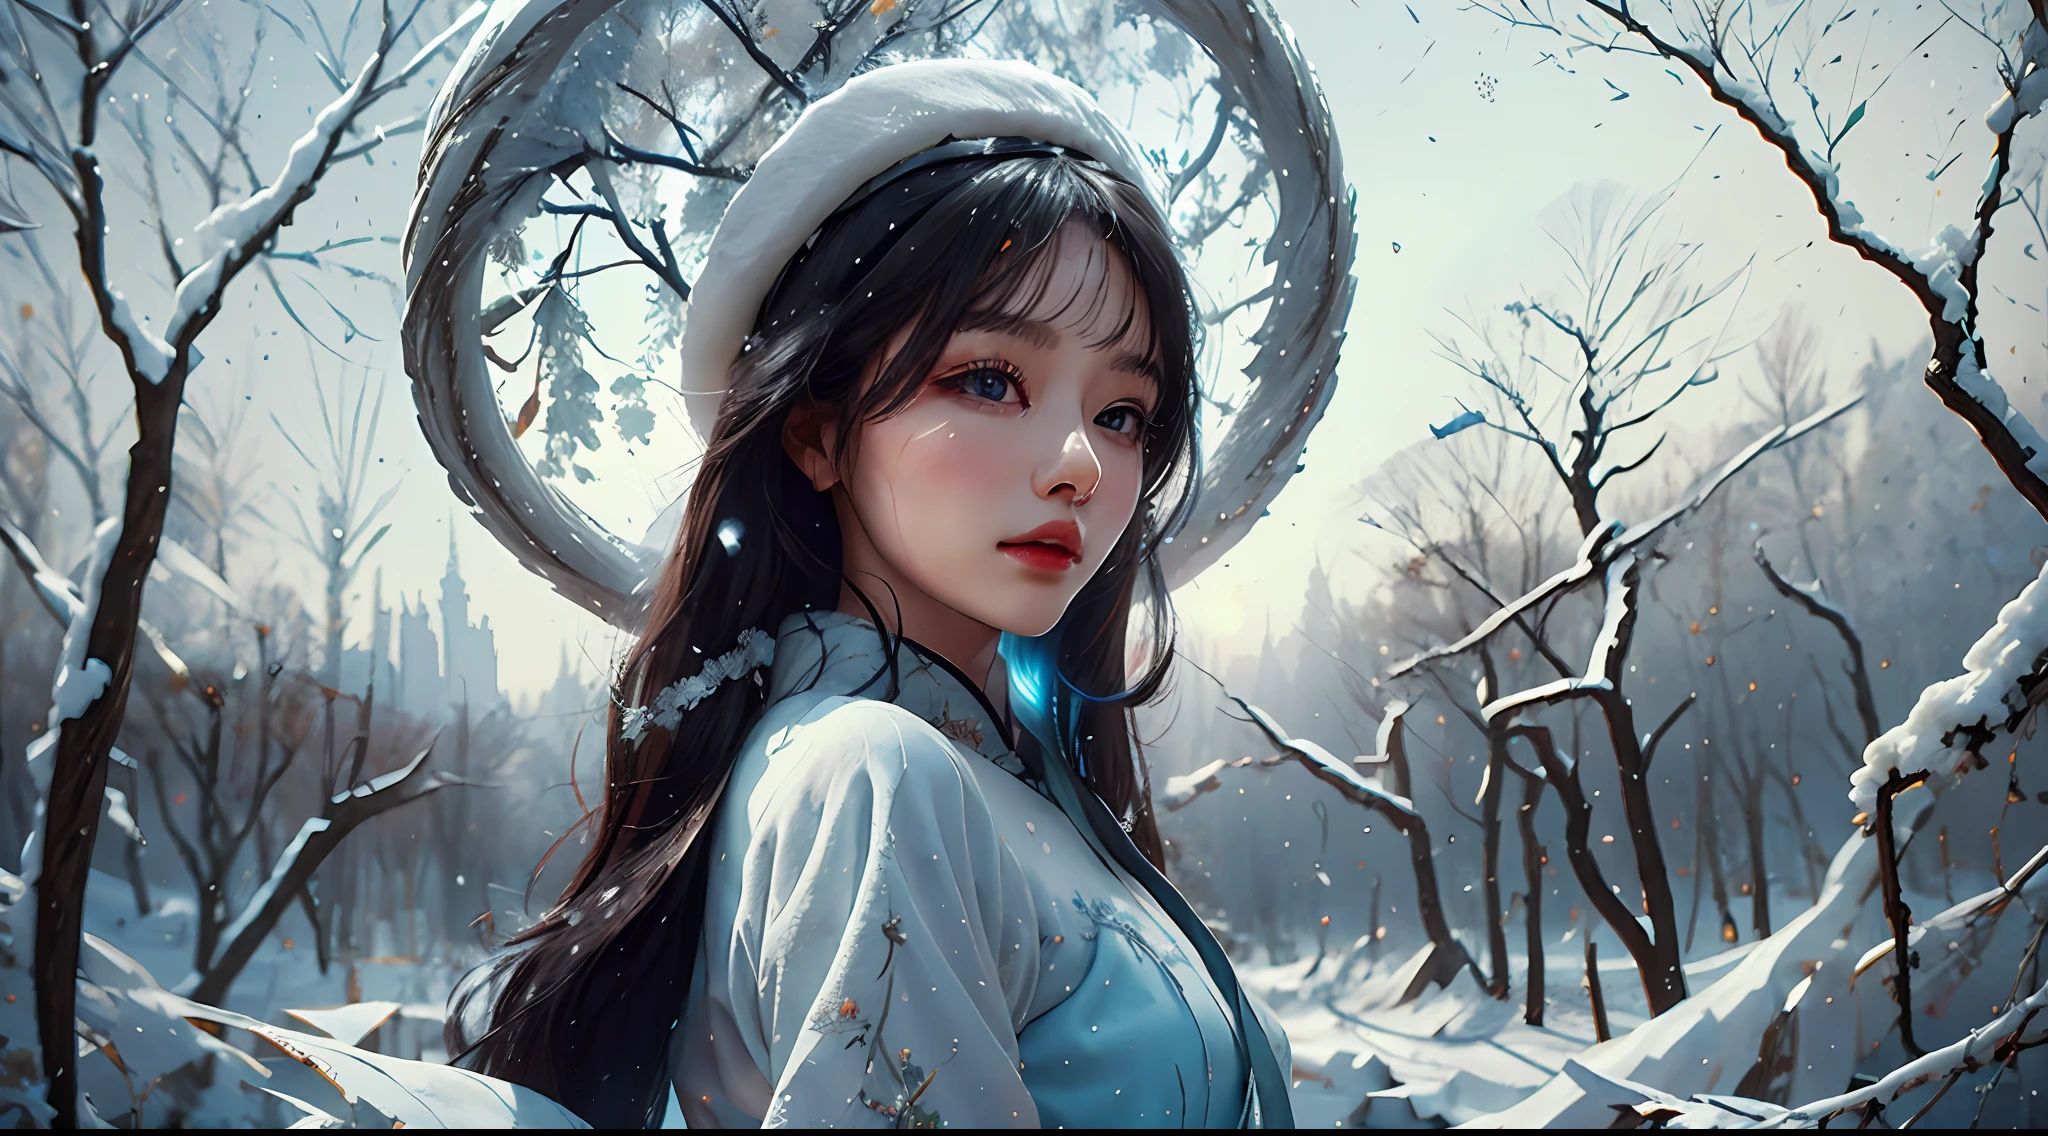 伝統的な中国の衣装を着た女性が雪の中に立っている，背景の木，雪flakes fell on her，チェン・イーフェイ，雪，写実的な絵画，芸術的な写真，超高解像度，写実的な，傑作，シャープなライン，鮮やかな色，美しい目，詳細な顔。